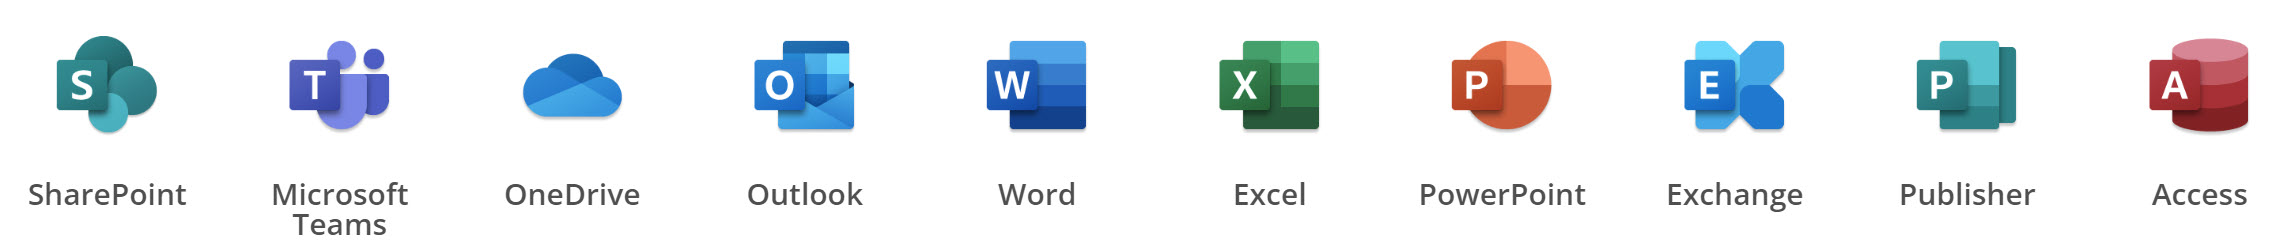 Microsoft Office 365 Word Excel Outlook Powerpoint Teams One Drive Access Publisher Exchange Sharepoint verbeter de efficiëntie van je bedrijfsactiviteiten.